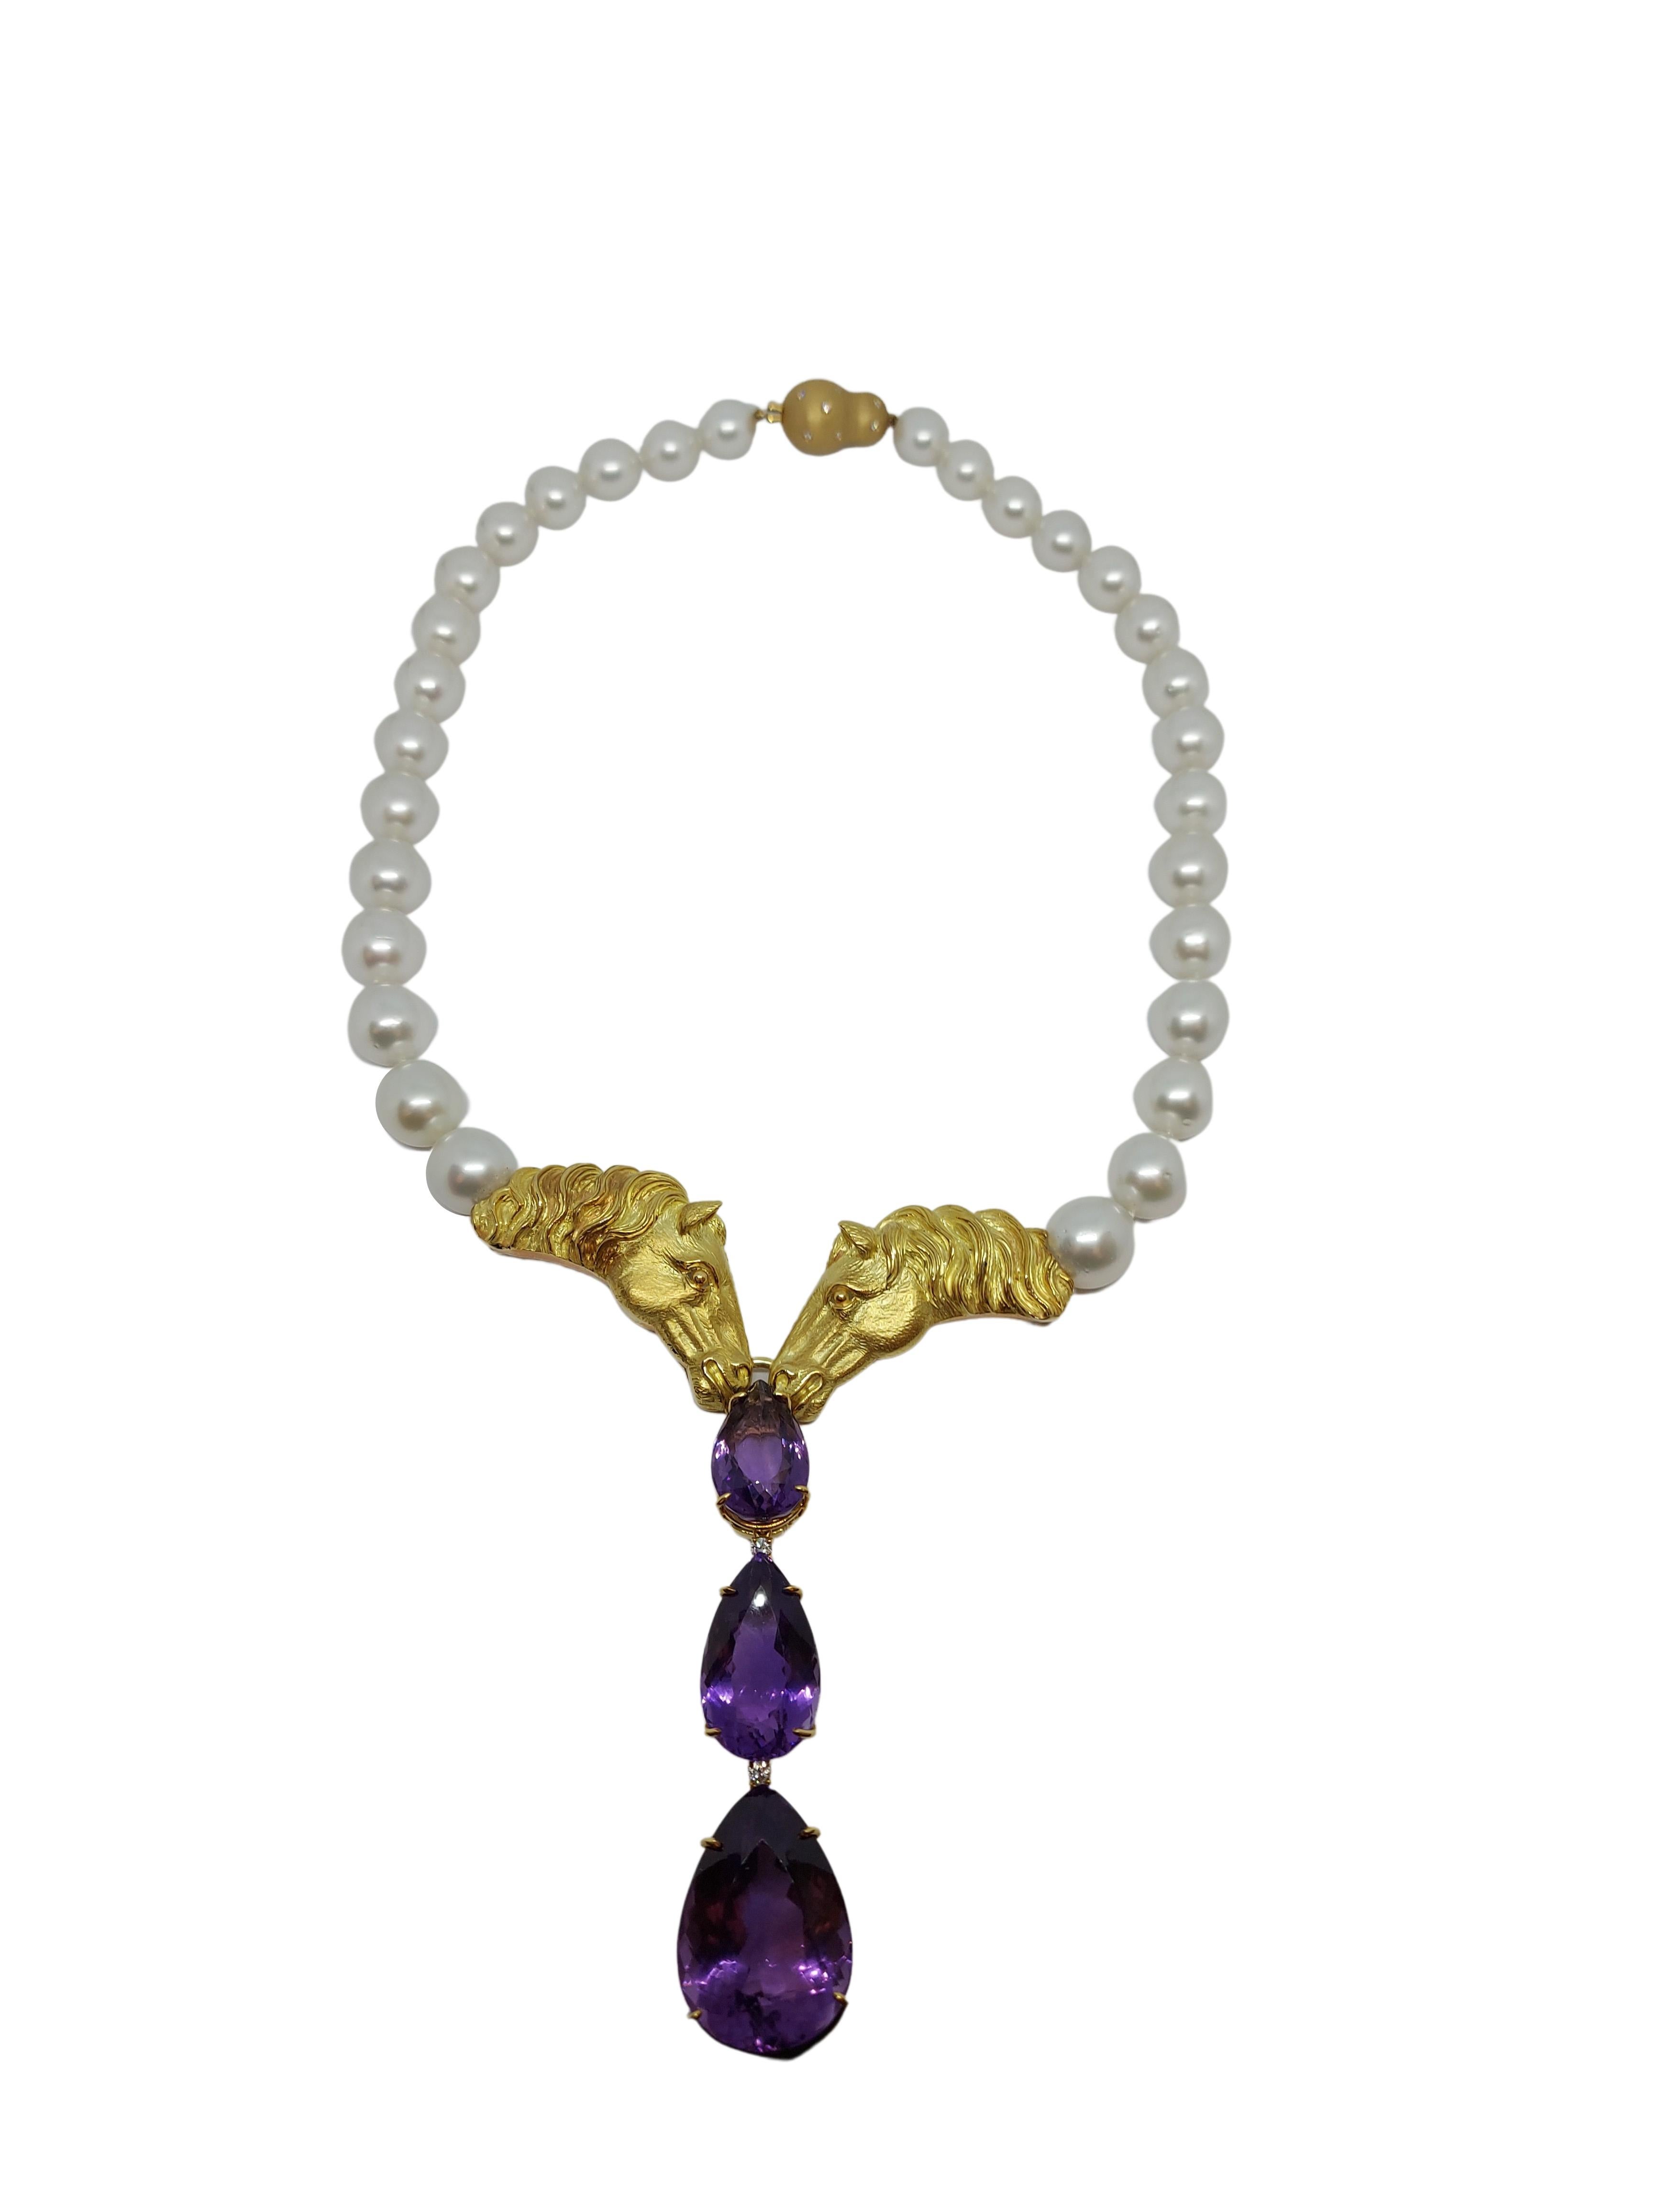 Superbe collier de perles des mers du Sud et pierres semi-précieuses en forme de poire en or 18 carats, fabriquées à la main avec précision.

Le collier peut être raccourci en enlevant les pierres d'améthyste en forme de poire.

Seulement 1 fabriqué